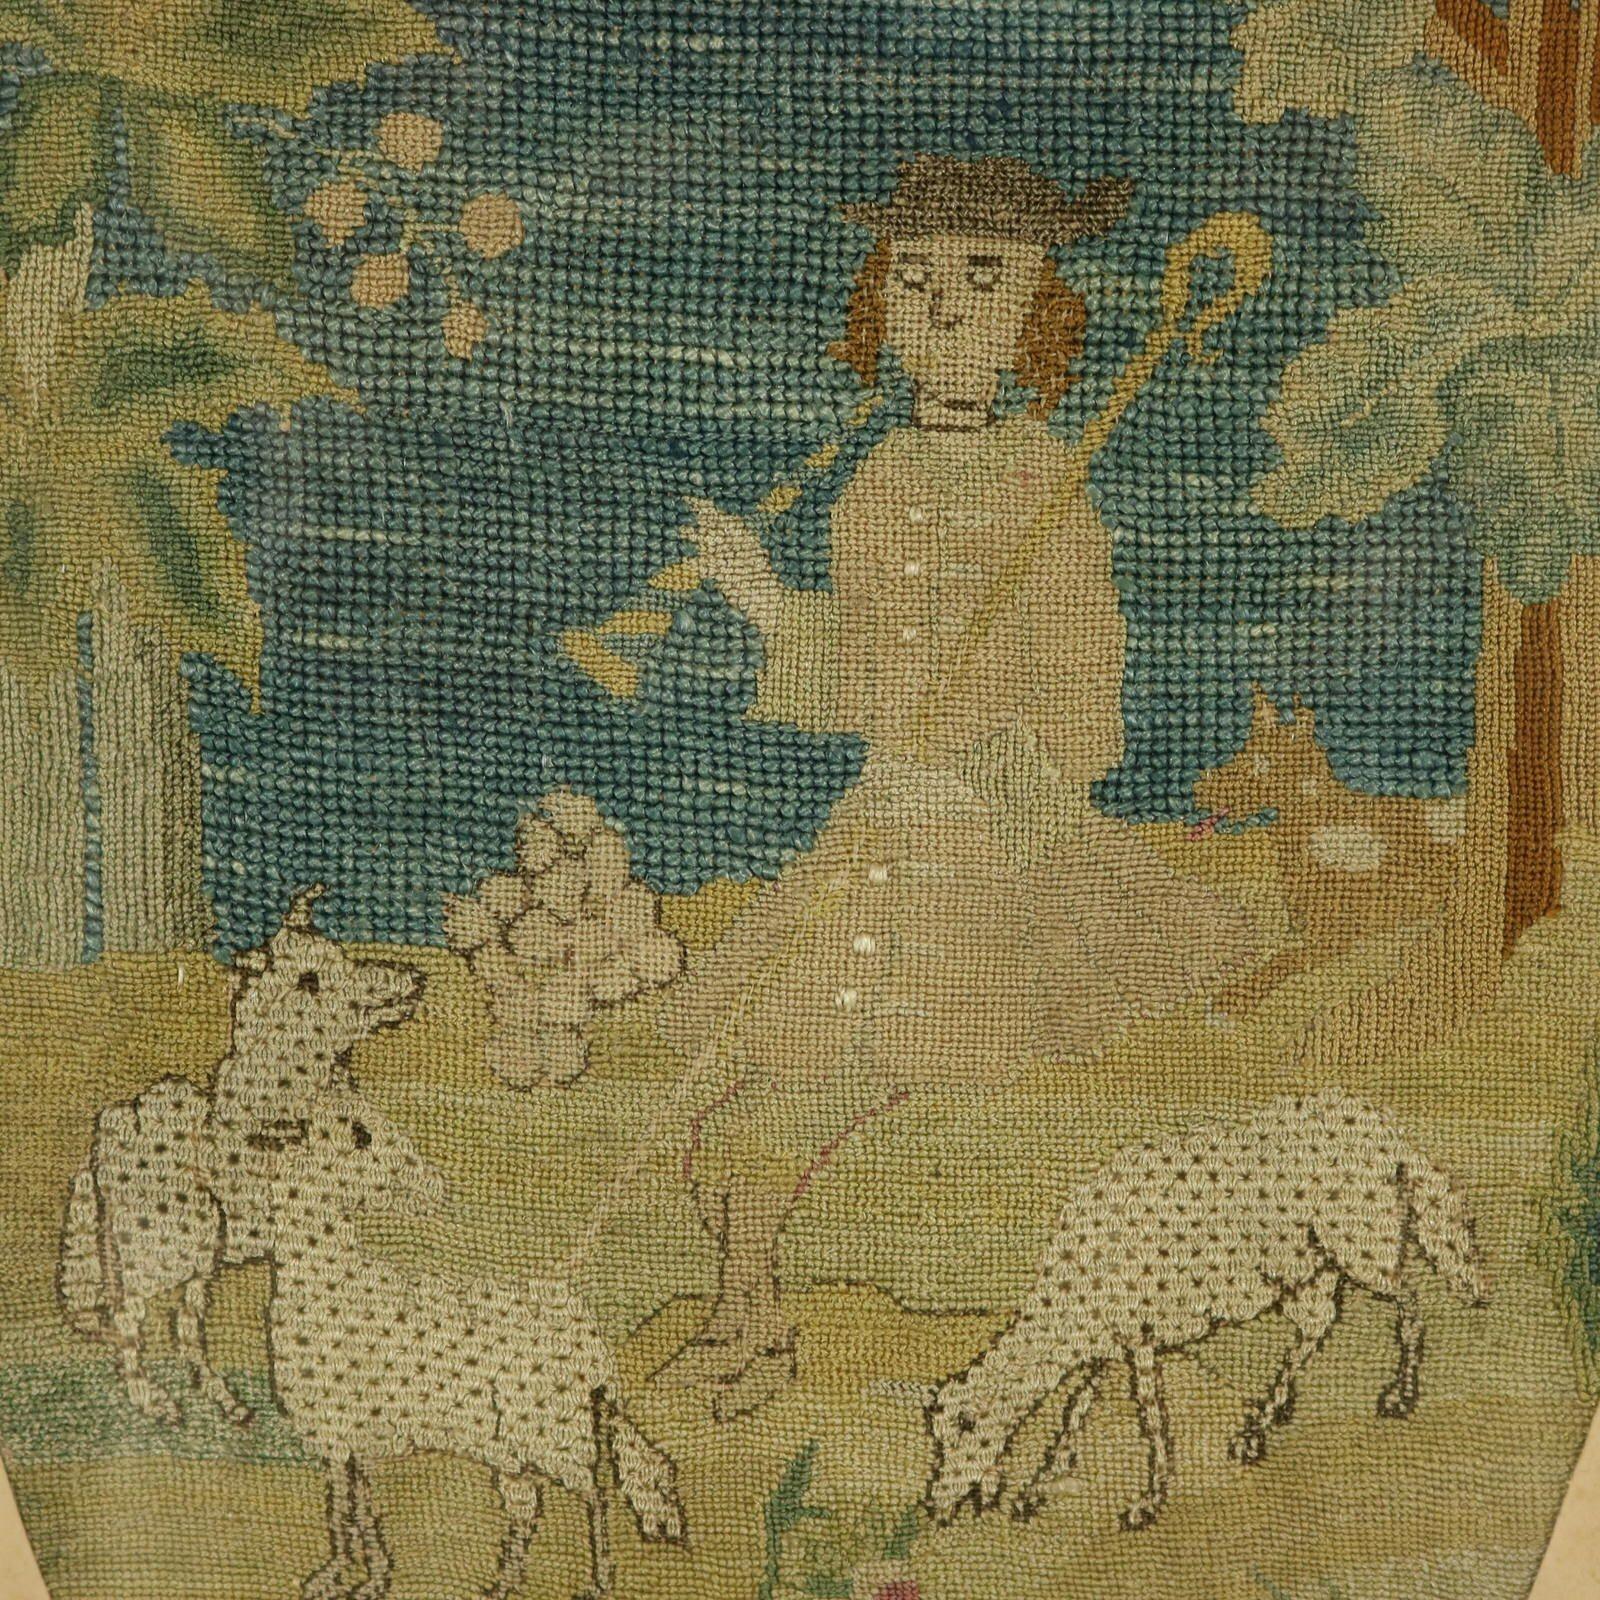 Broderie en soie au point de tente du XVIIIe siècle représentant un berger avec son troupeau de moutons. La pièce est réalisée au point de tente, avec des fils de soie. Couleurs : bleu, vert, argent, brun et rose. Le sujet représente un berger